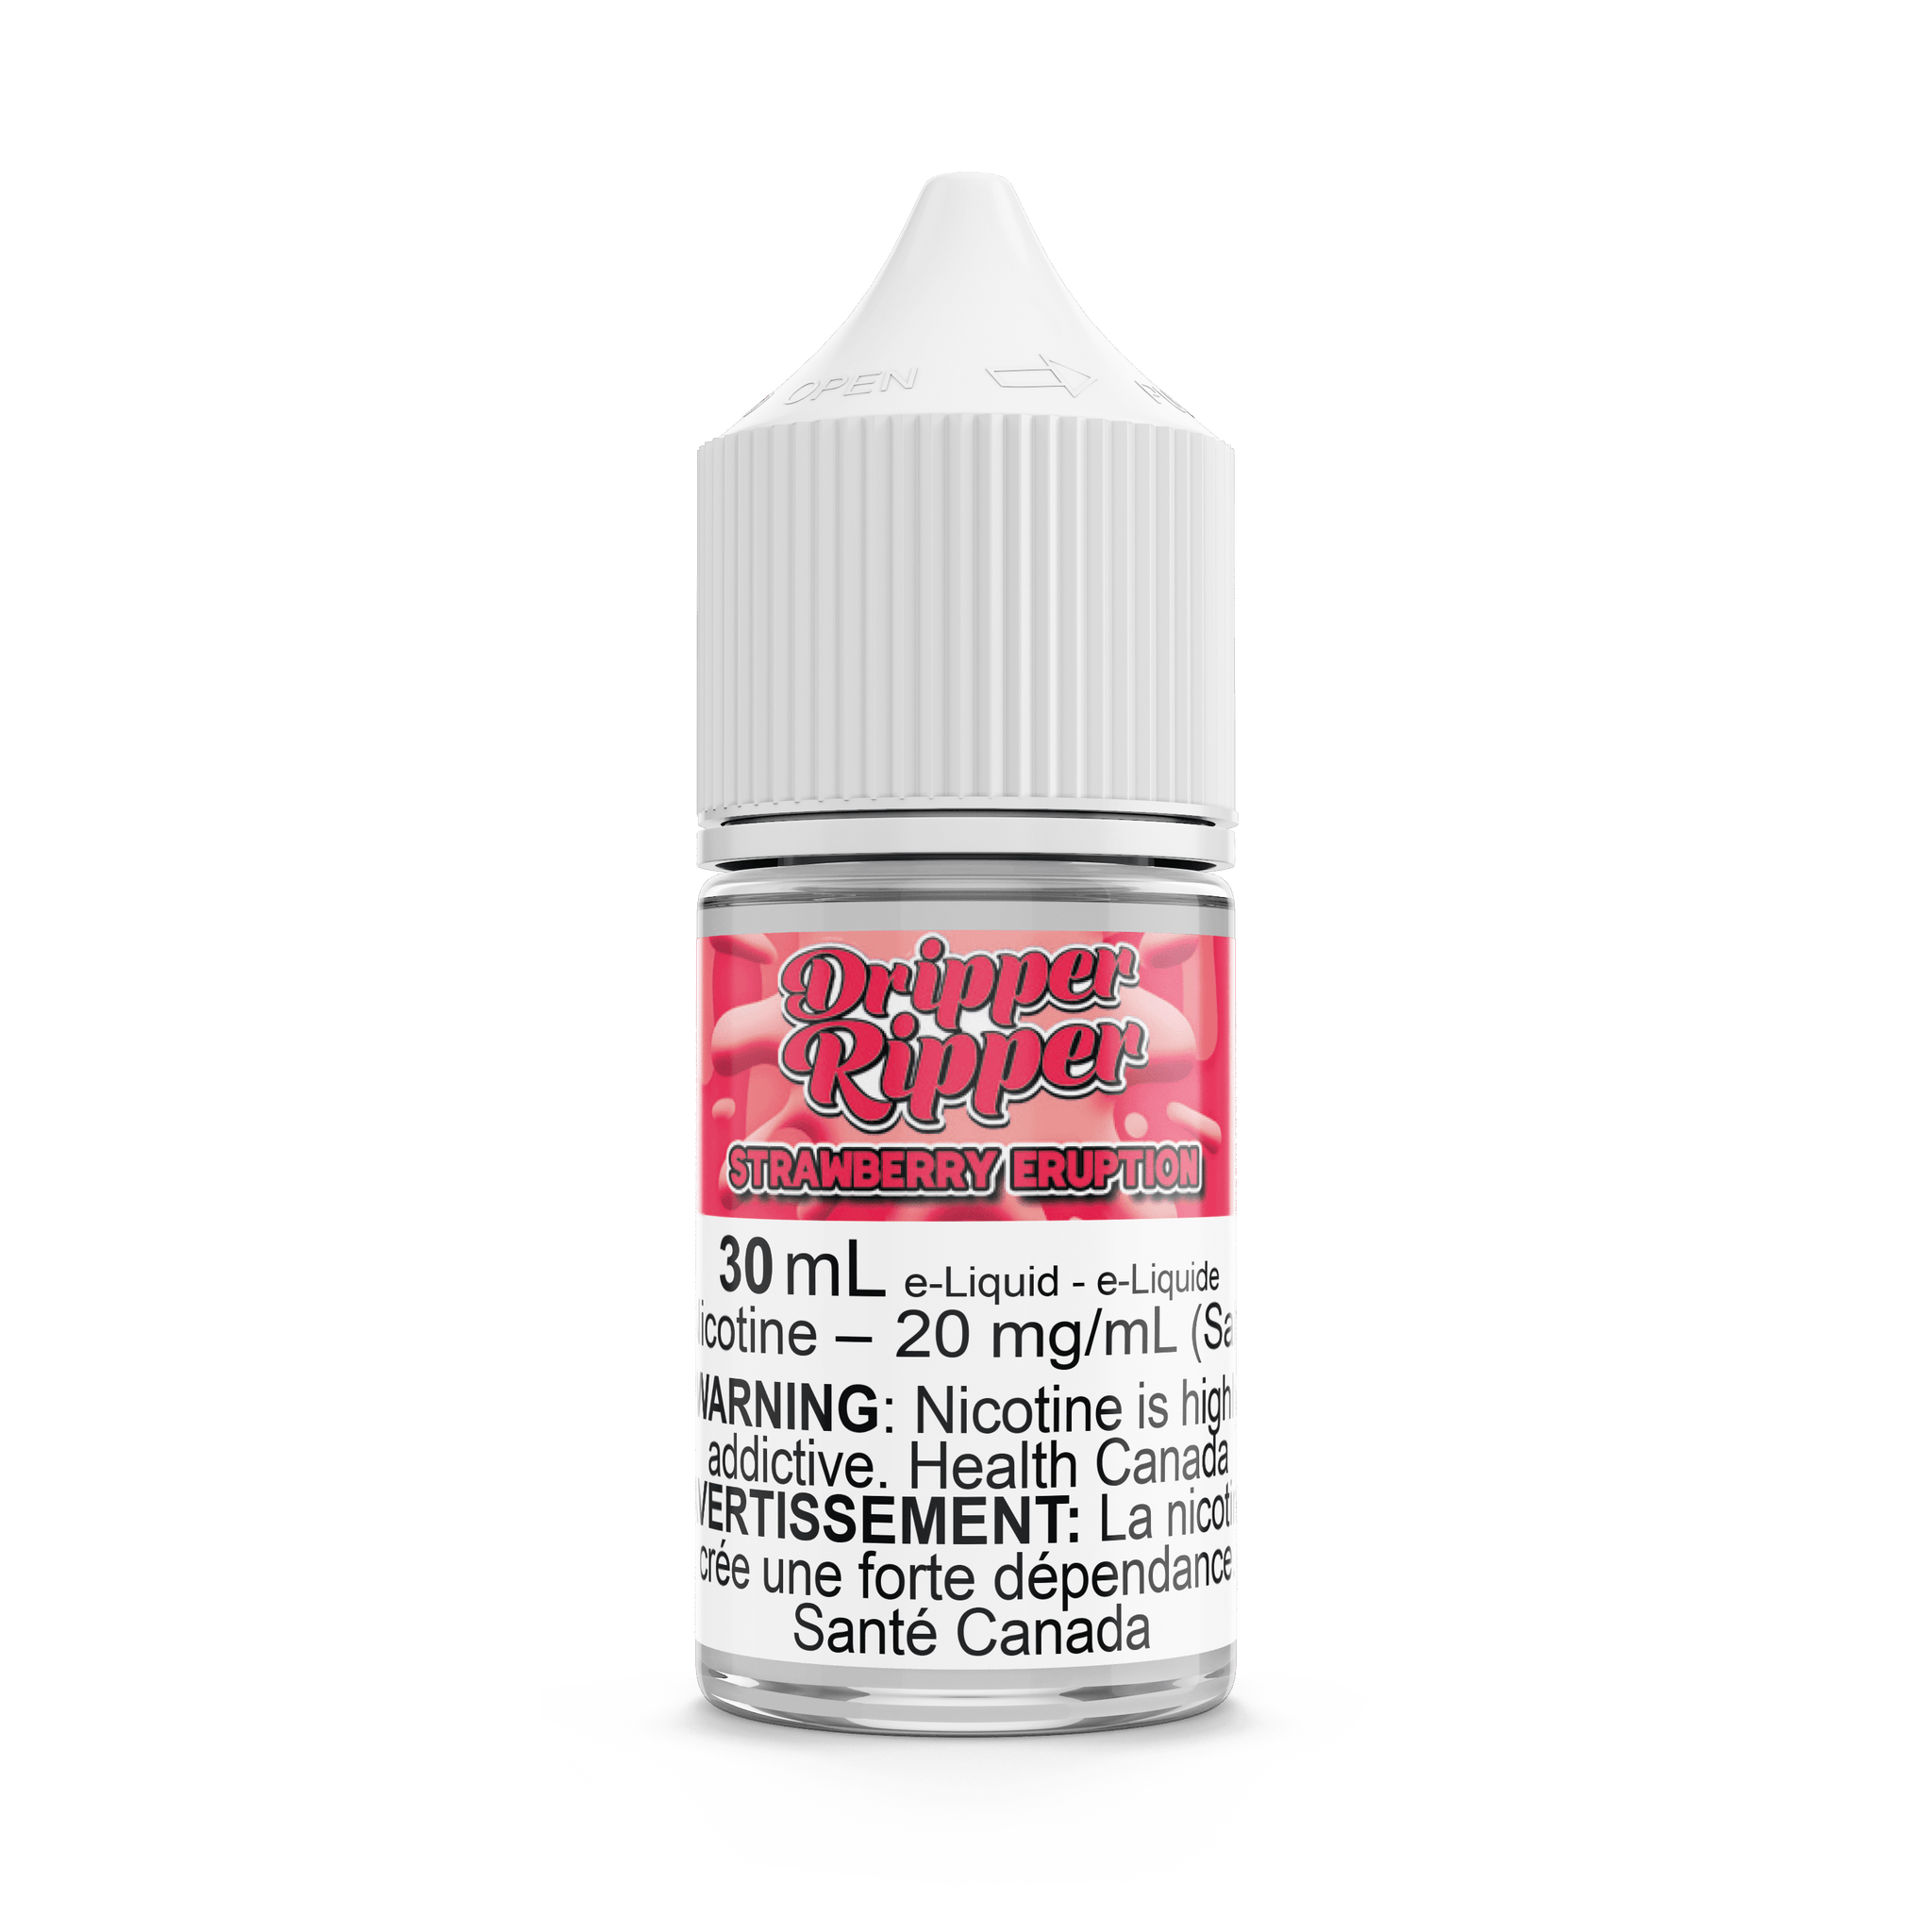 Dripper Ripper Salts Strawberry Eruption - Vapor Shoppe